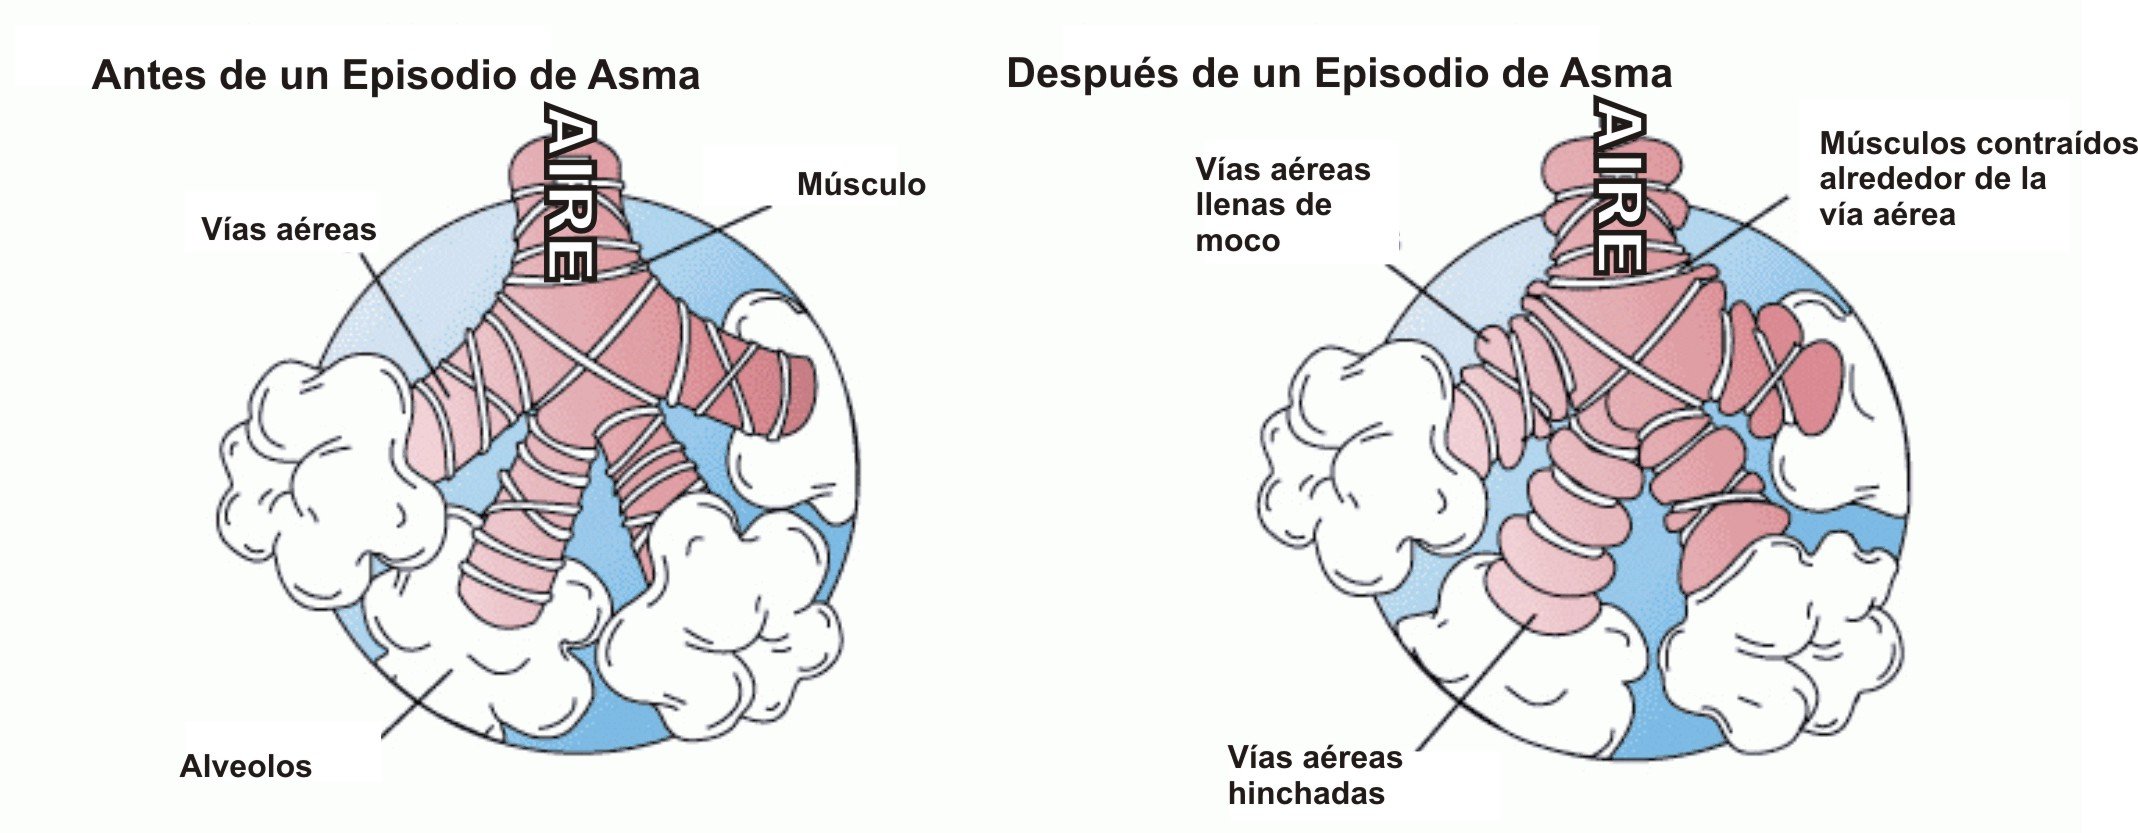 Esquema sobre el asma. | Imagen: Wikipedia